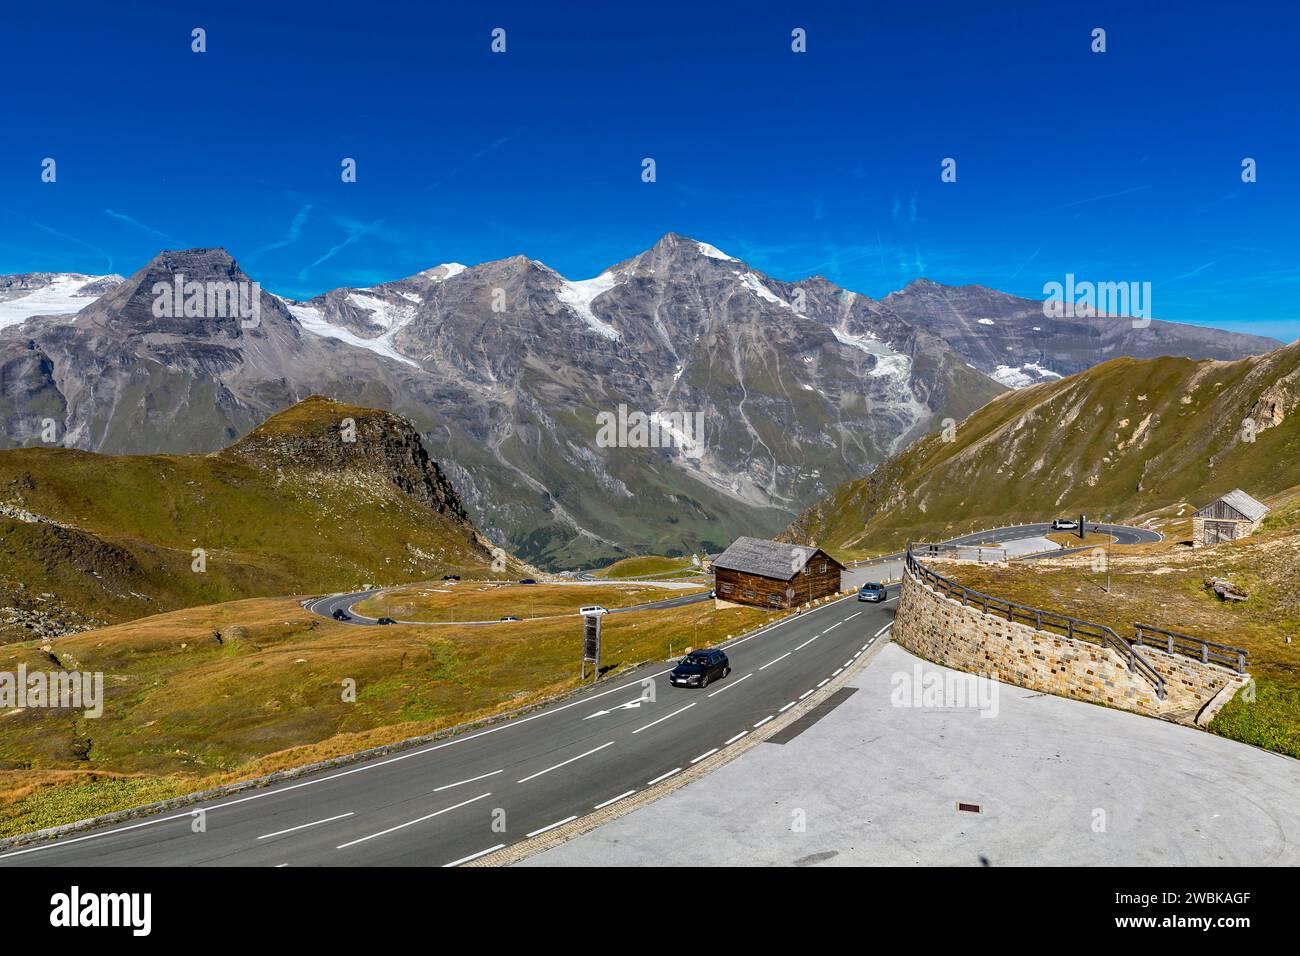 View of the serpentine road and the mountains, Mittlerer Bärenkopf, 3357 m, Hohe Dock, 3348 m, Klockerin, 3422 m, Vorderer Bratschenkopf, 3403 m, Großes Wiesbachhorn, 3564 m, Kleines Wiesbachhorn, 3283 m, Hoher Tenn, 3368 m, Grossglockner High Alpine Road, Hohe Tauern National Park, Austria, Europe Stock Photo